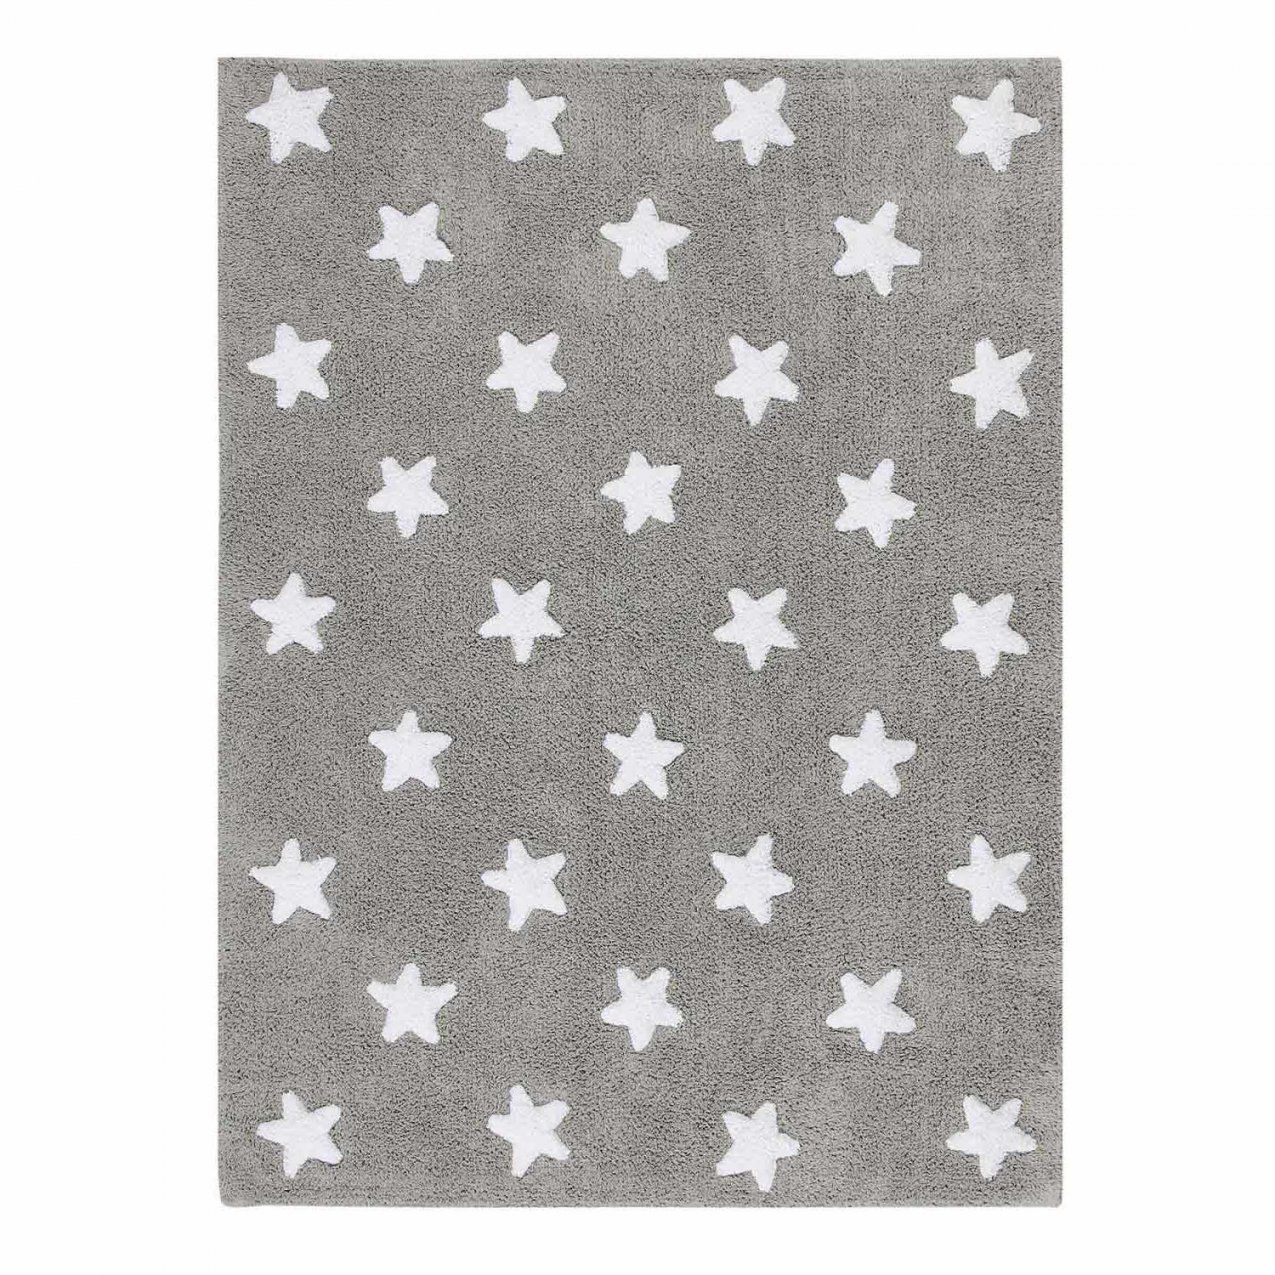 Lorena Canals Kinderteppich Dunkelgrau Sterne Weiß  Engel&amp;bengel von Teppich Mit Sternen Grau Photo